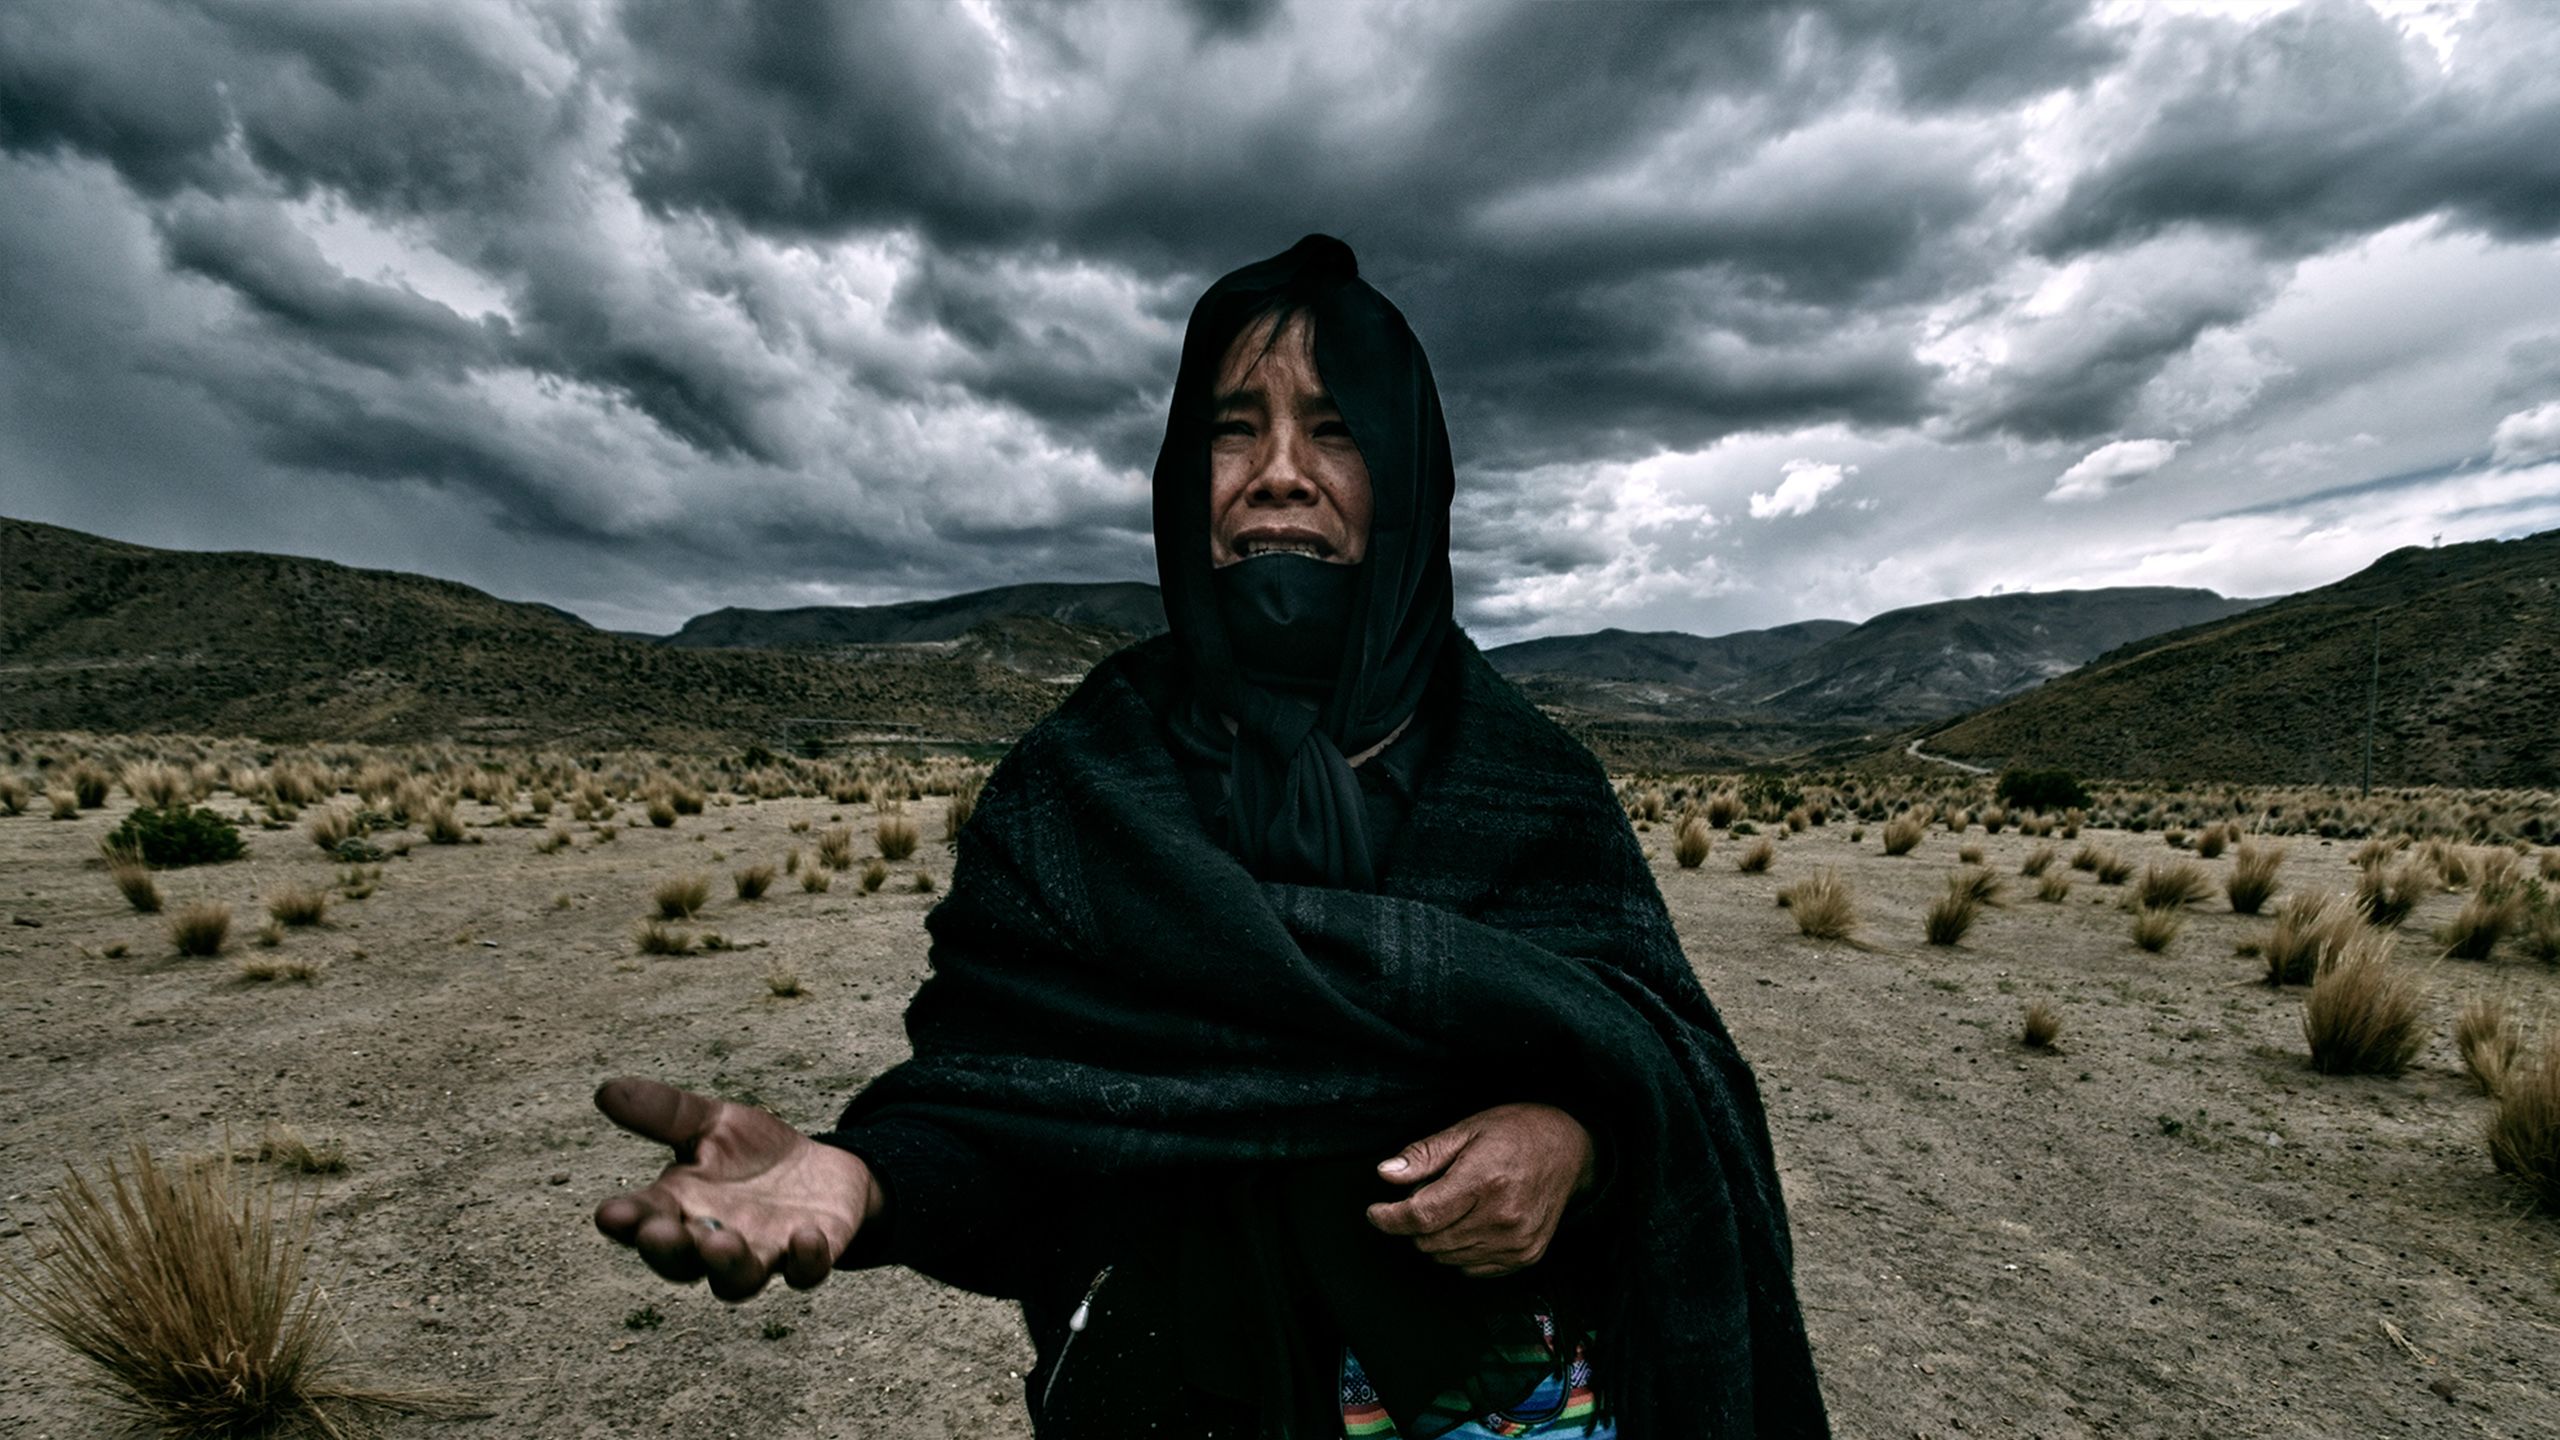 Eine bolivianische Frau in traditioneller Trauerkleidung streckt vor einem wolkigen Himmel und karger Landschaft anklagend ihre Hände aus.